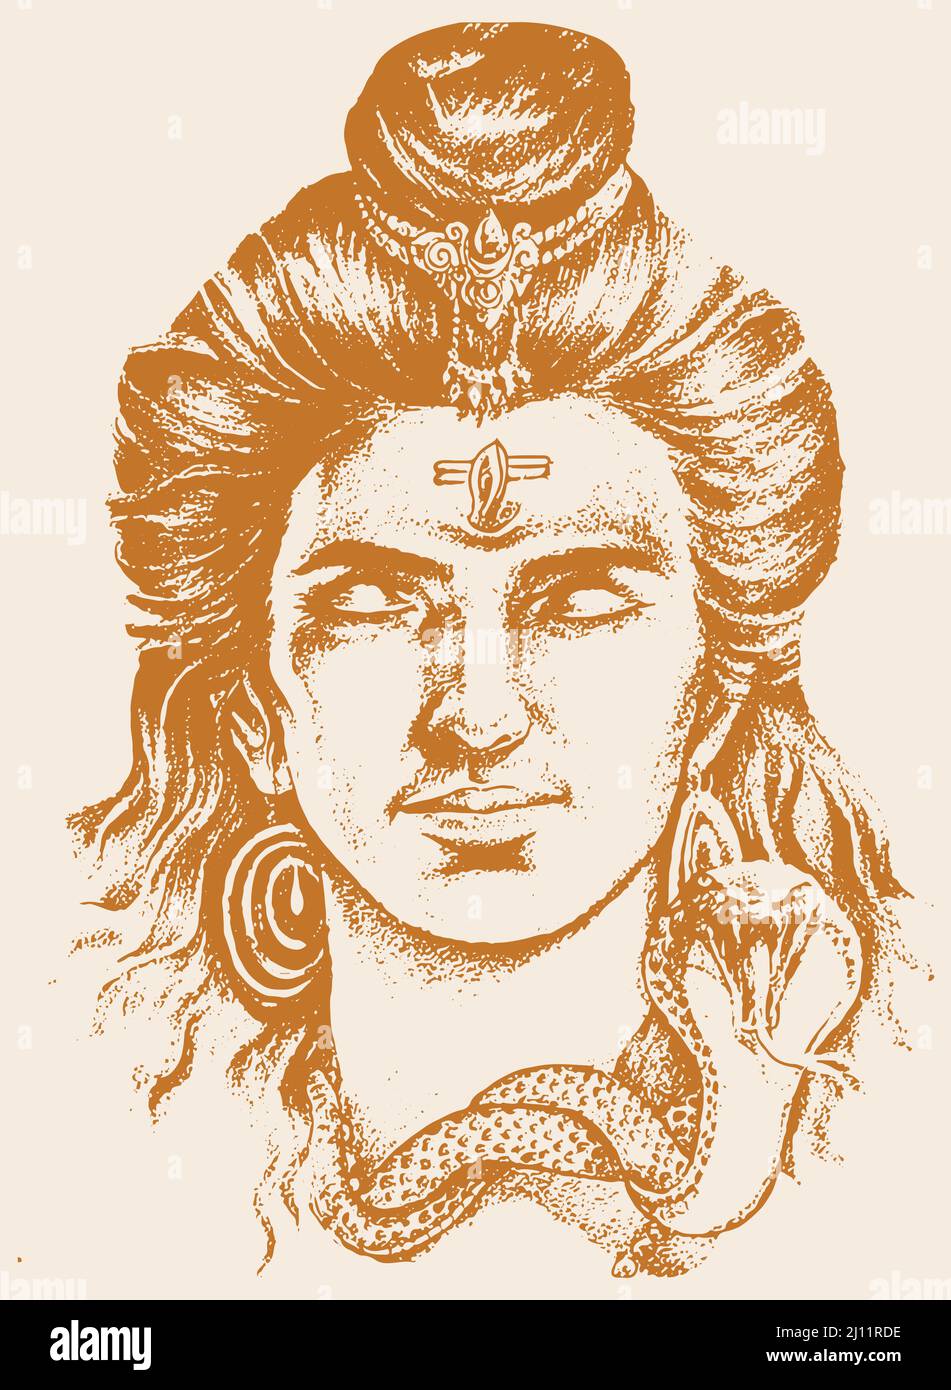 Disegno illustrato di t Lord Shiva di colore marrone su sfondo marrone chiaro Foto Stock